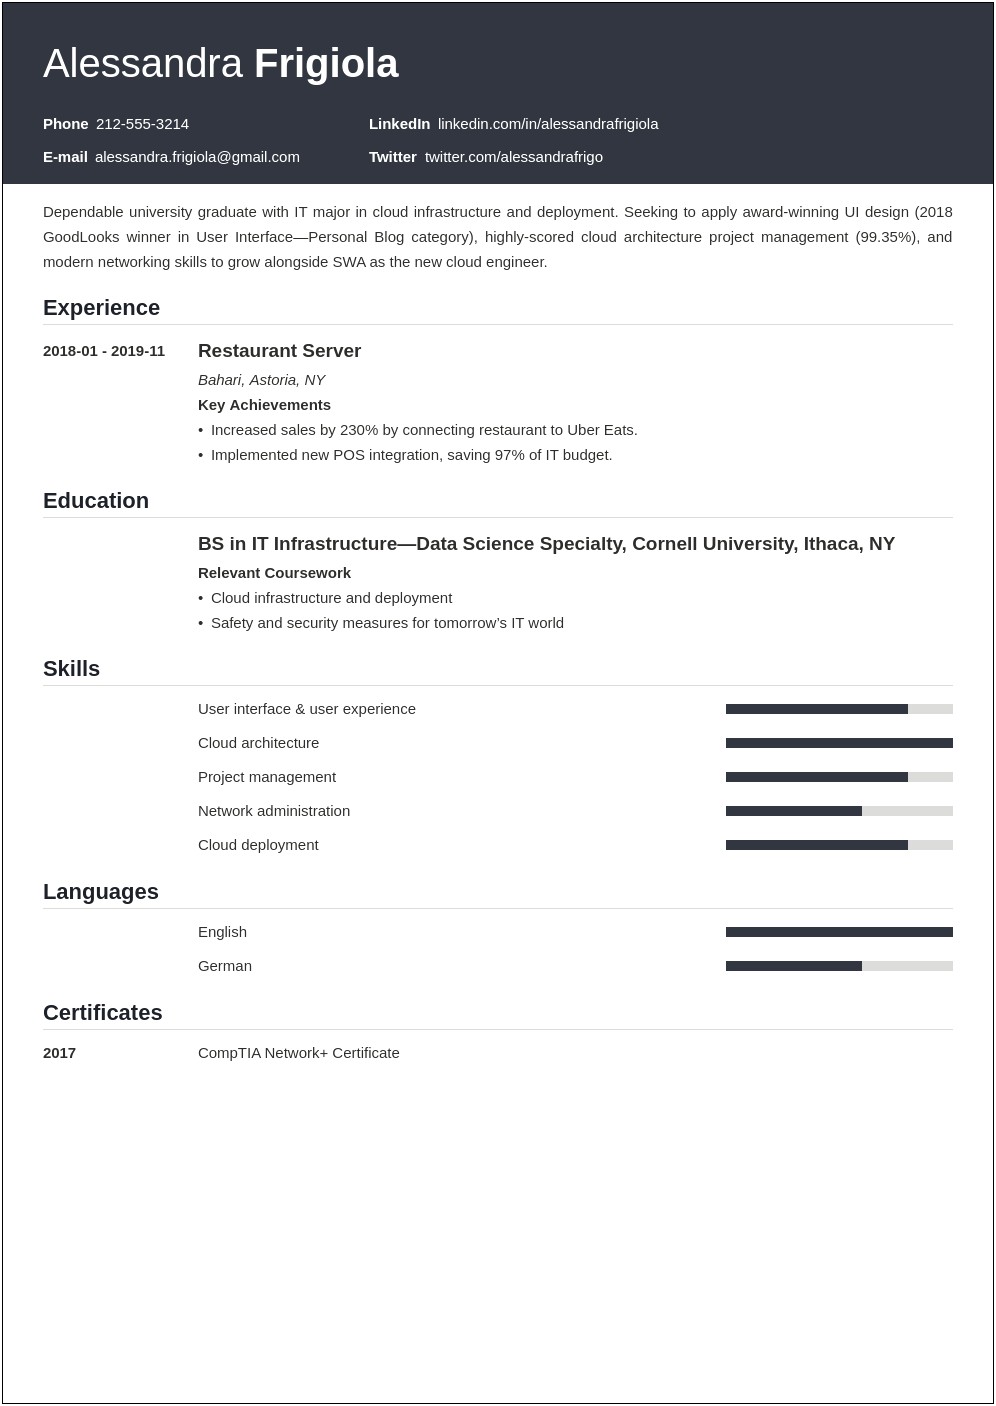 Resume Design For Entry Level Job